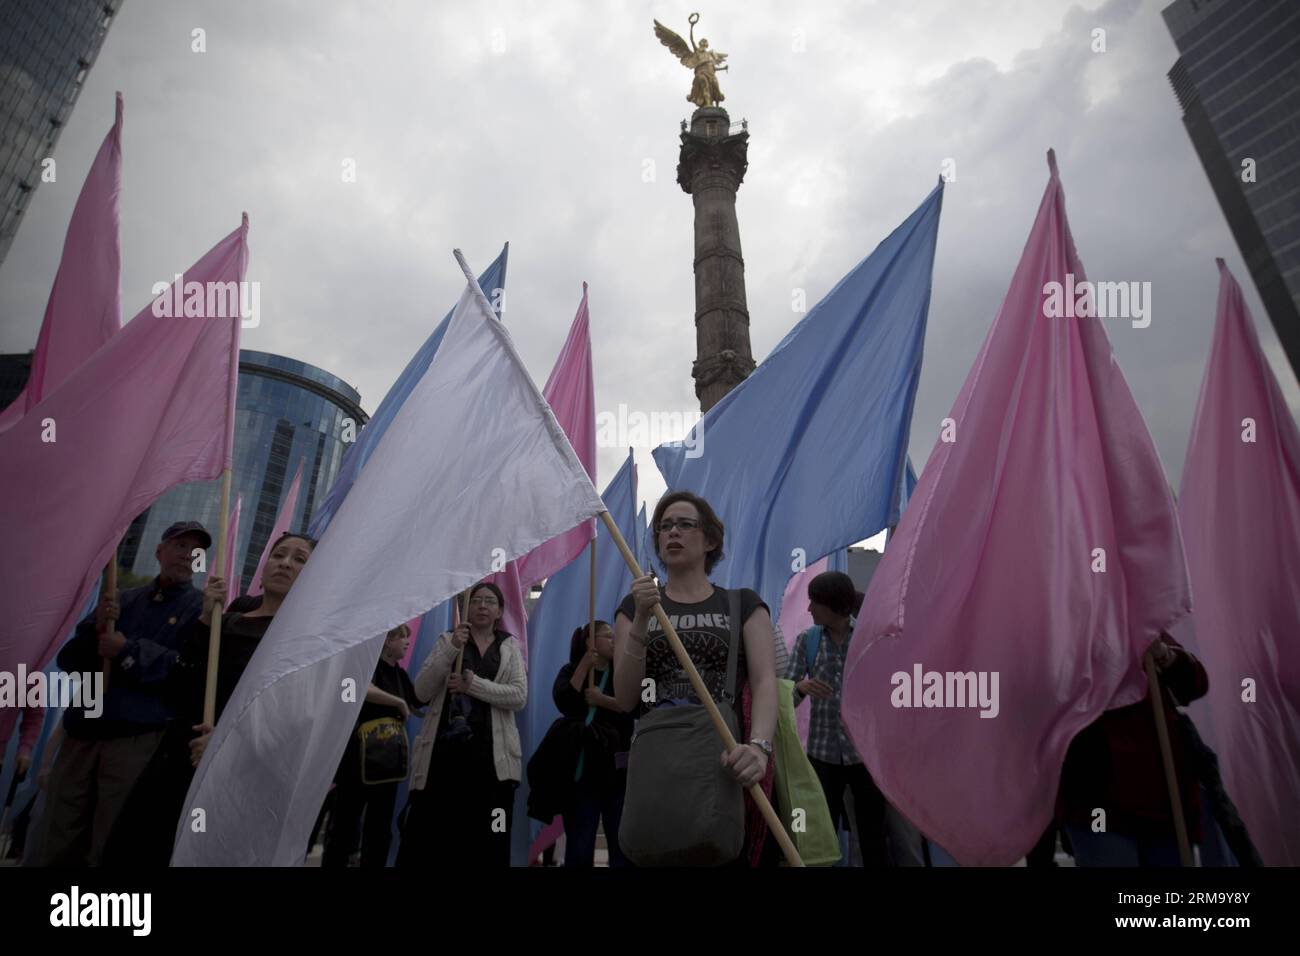 (140606) -- MEXIKO-STADT, 5. Juni 2014 (Xinhua) -- Menschen halten Flaggen während einer Kundgebung in Mexiko-Stadt, Hauptstadt von Mexiko, 5. Juni 2014. Die Bewohner nehmen an einer Kundgebung zum 5. Jahrestag des Brandes in der ABC-Kinderkrippe in Sonora, Mexiko, Teil, bei der 49 Kinder starben. (Xinhua/Alejandro Ayala) (zhf) MEXIKO-MEXIKO-STADT-GESELLSCHAFT-RALLYE PUBLICATIONxNOTxINxCHN Mexiko-Stadt 5. Juni 2014 XINHUA Prominente Halten Fahnen während einer RALLYE in Mexiko-Stadt Hauptstadt von Mexiko 5. Juni 2014 Einwohner nehmen an einer RALLYE Teil, um den 5. Jahrestag des Feuers in der ABC Kinderstube in Sonora Mexiko zu gedenken Stockfoto